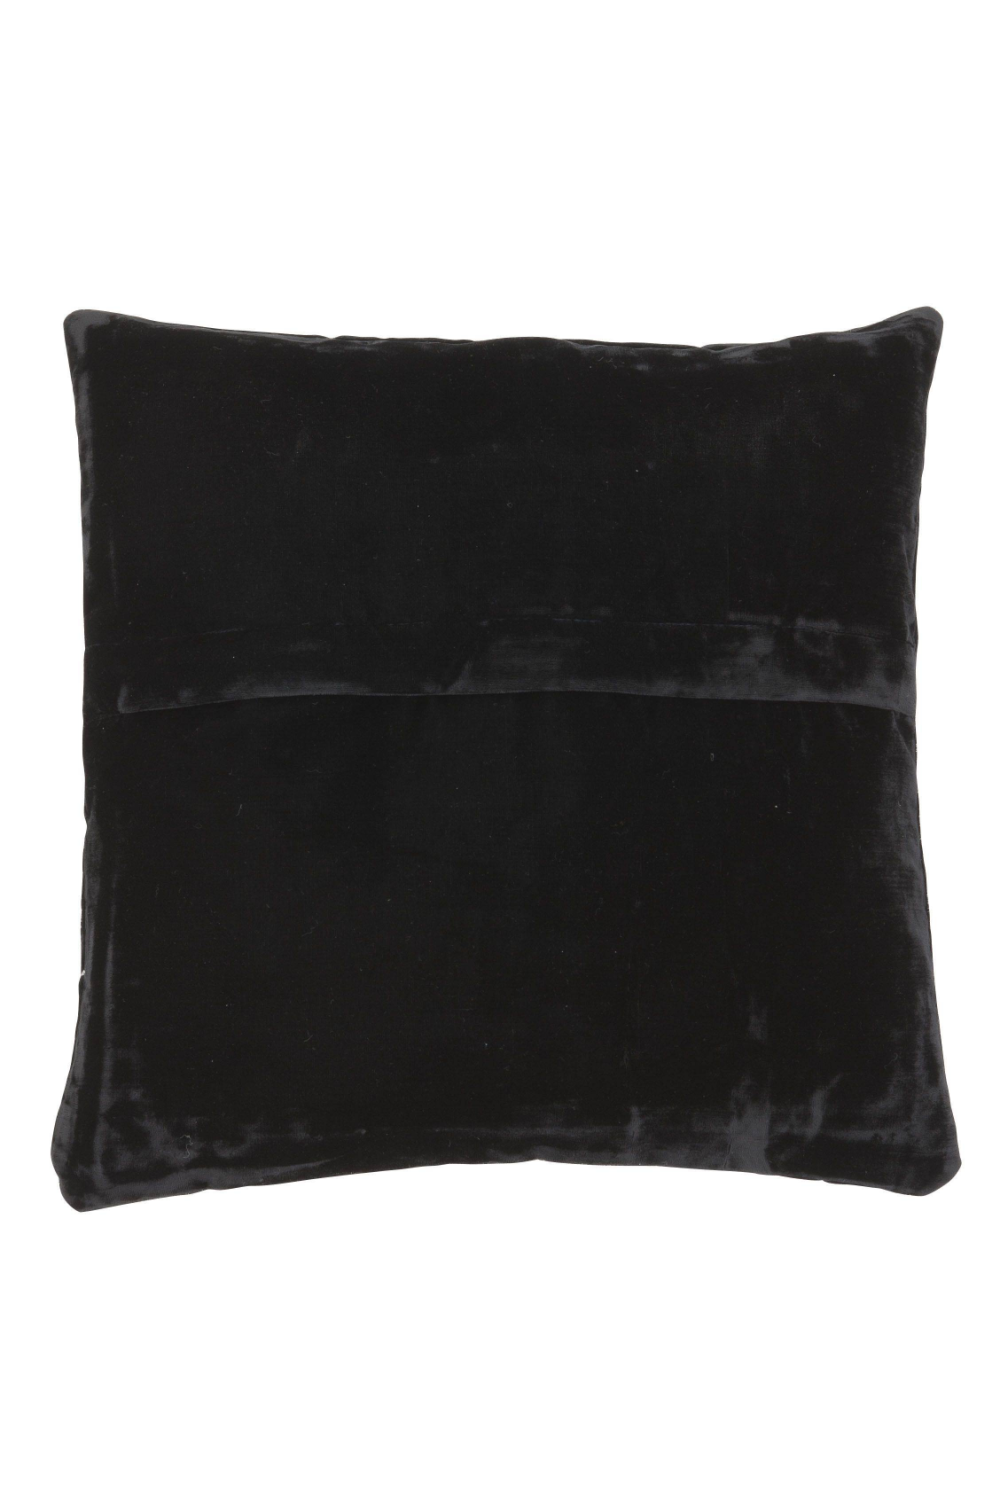 Black Velvet Pillow | Eichholtz Baronesa - S | OROA